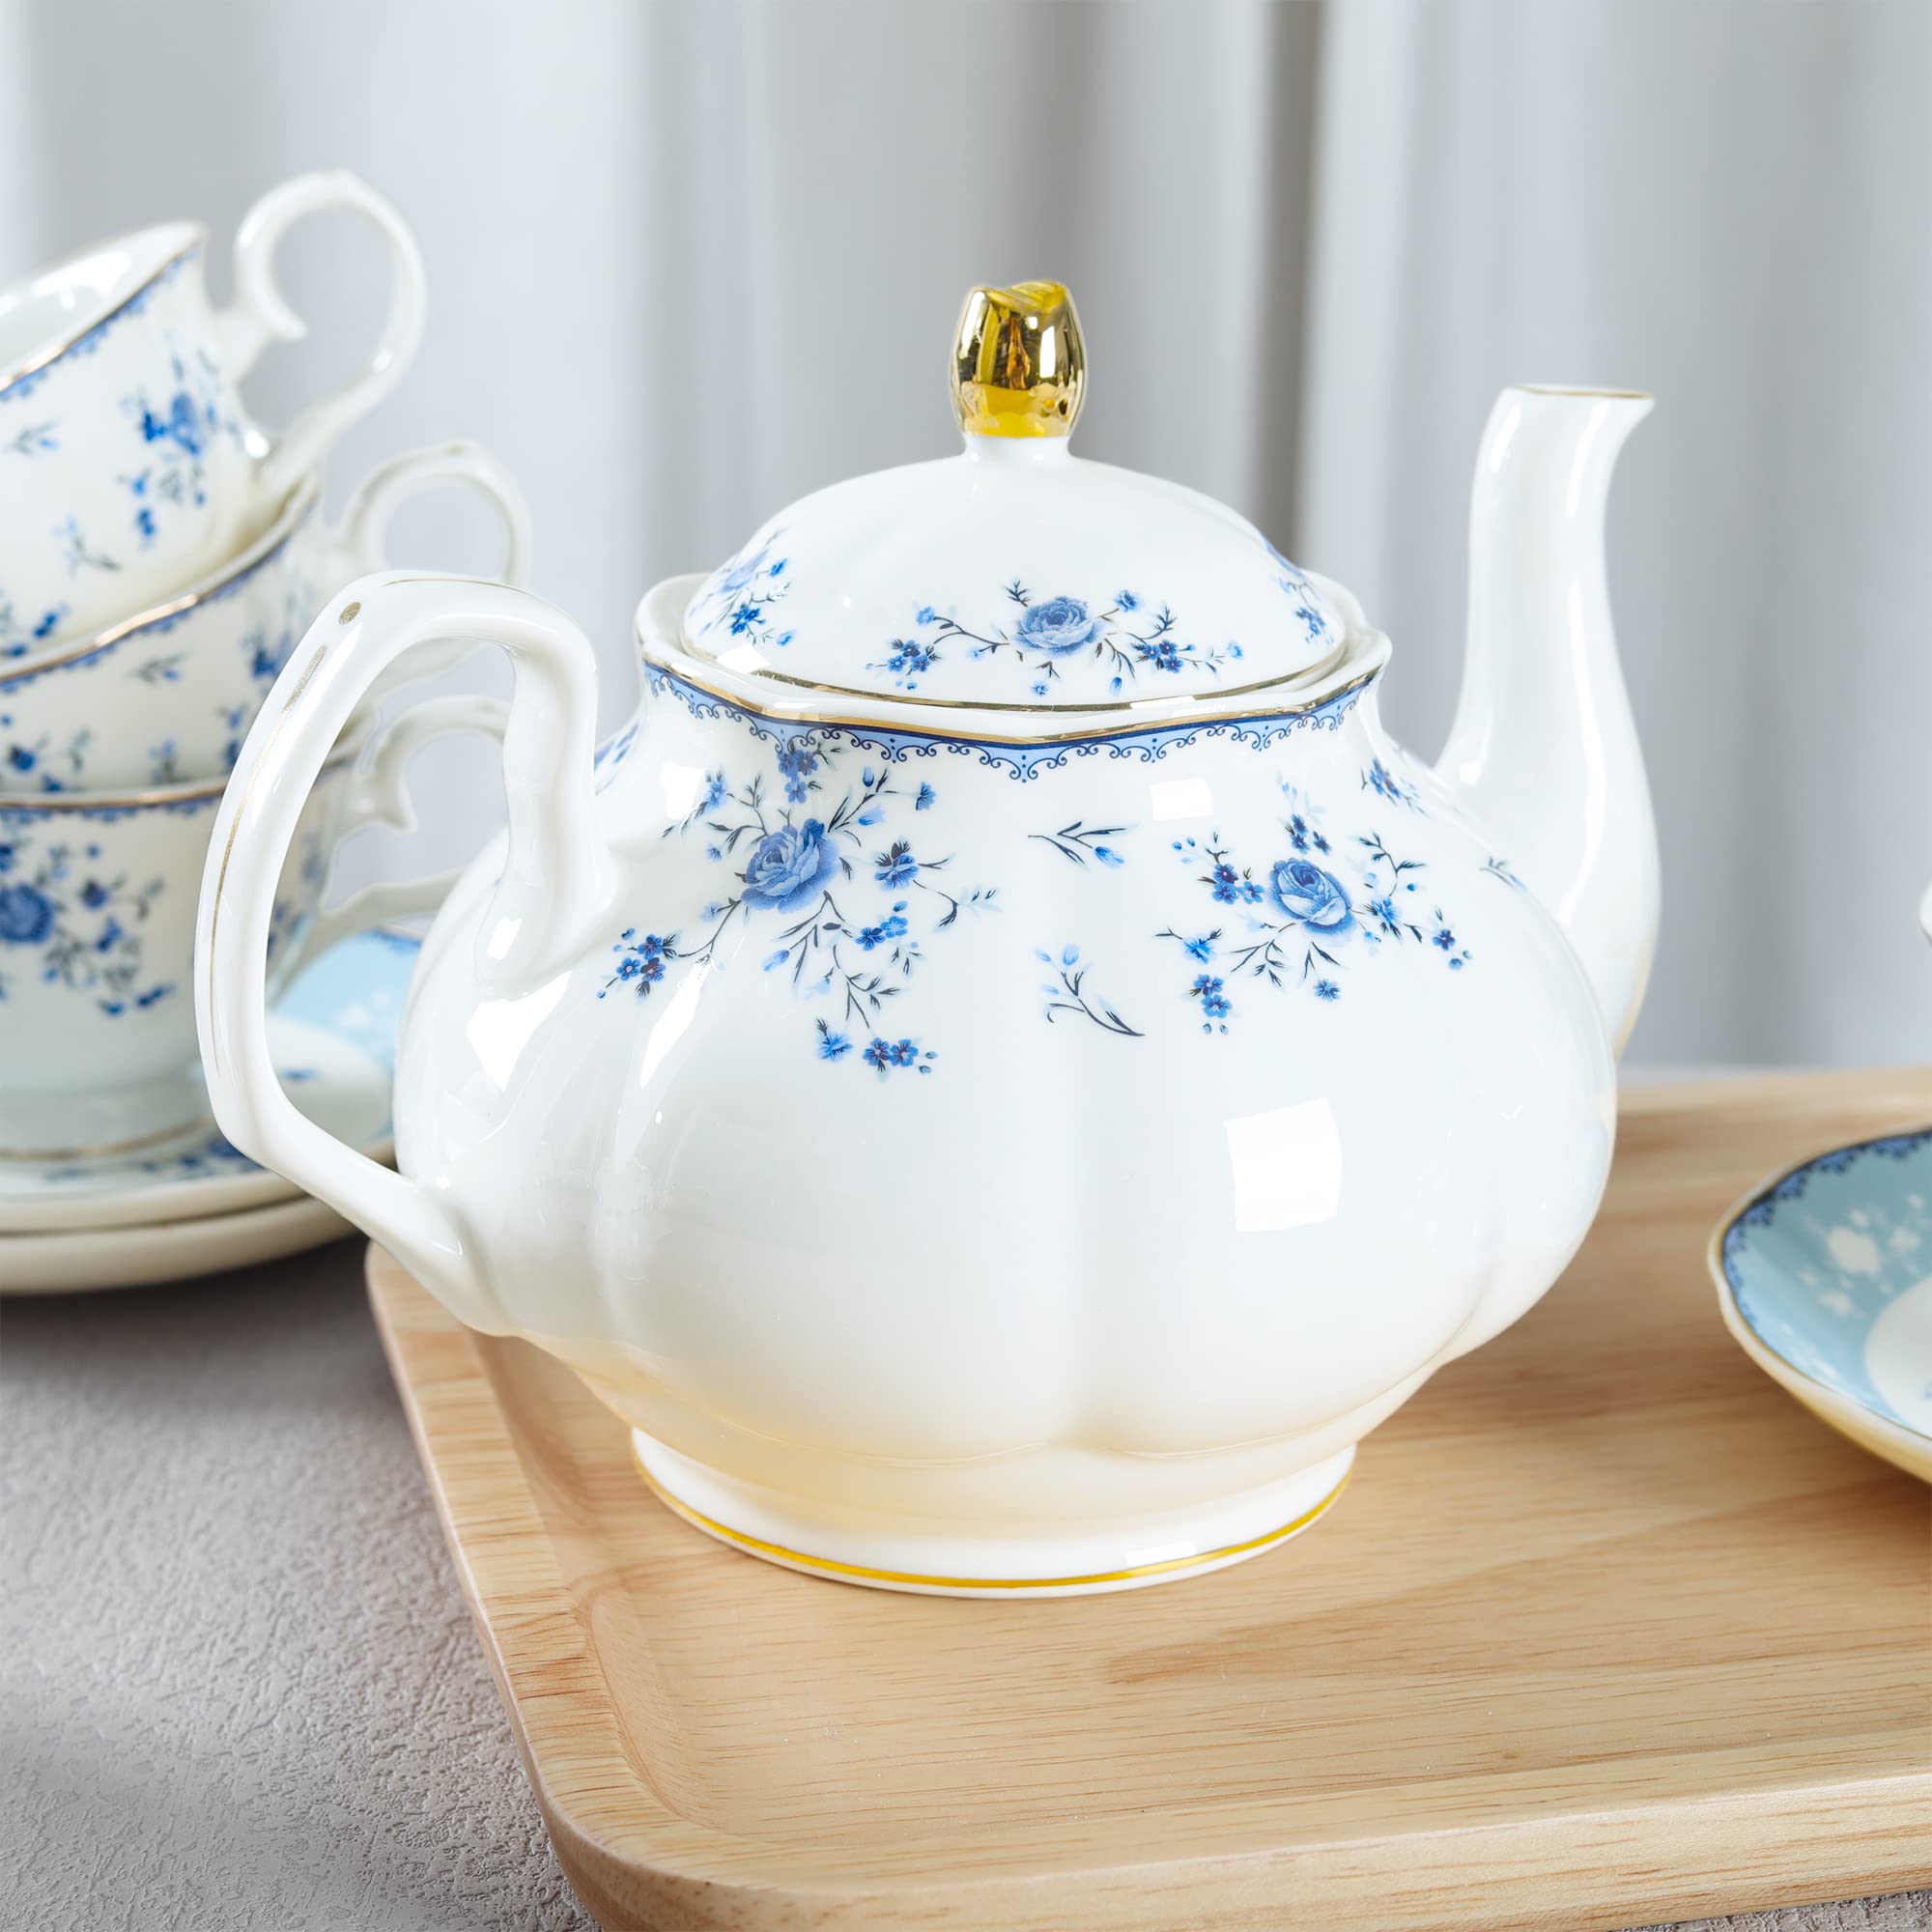 fanquare 15 Piece Blue Rose Porcelain Tea Set, British Floral Teapot with Tea Cups, Women Tea Party Set for 6